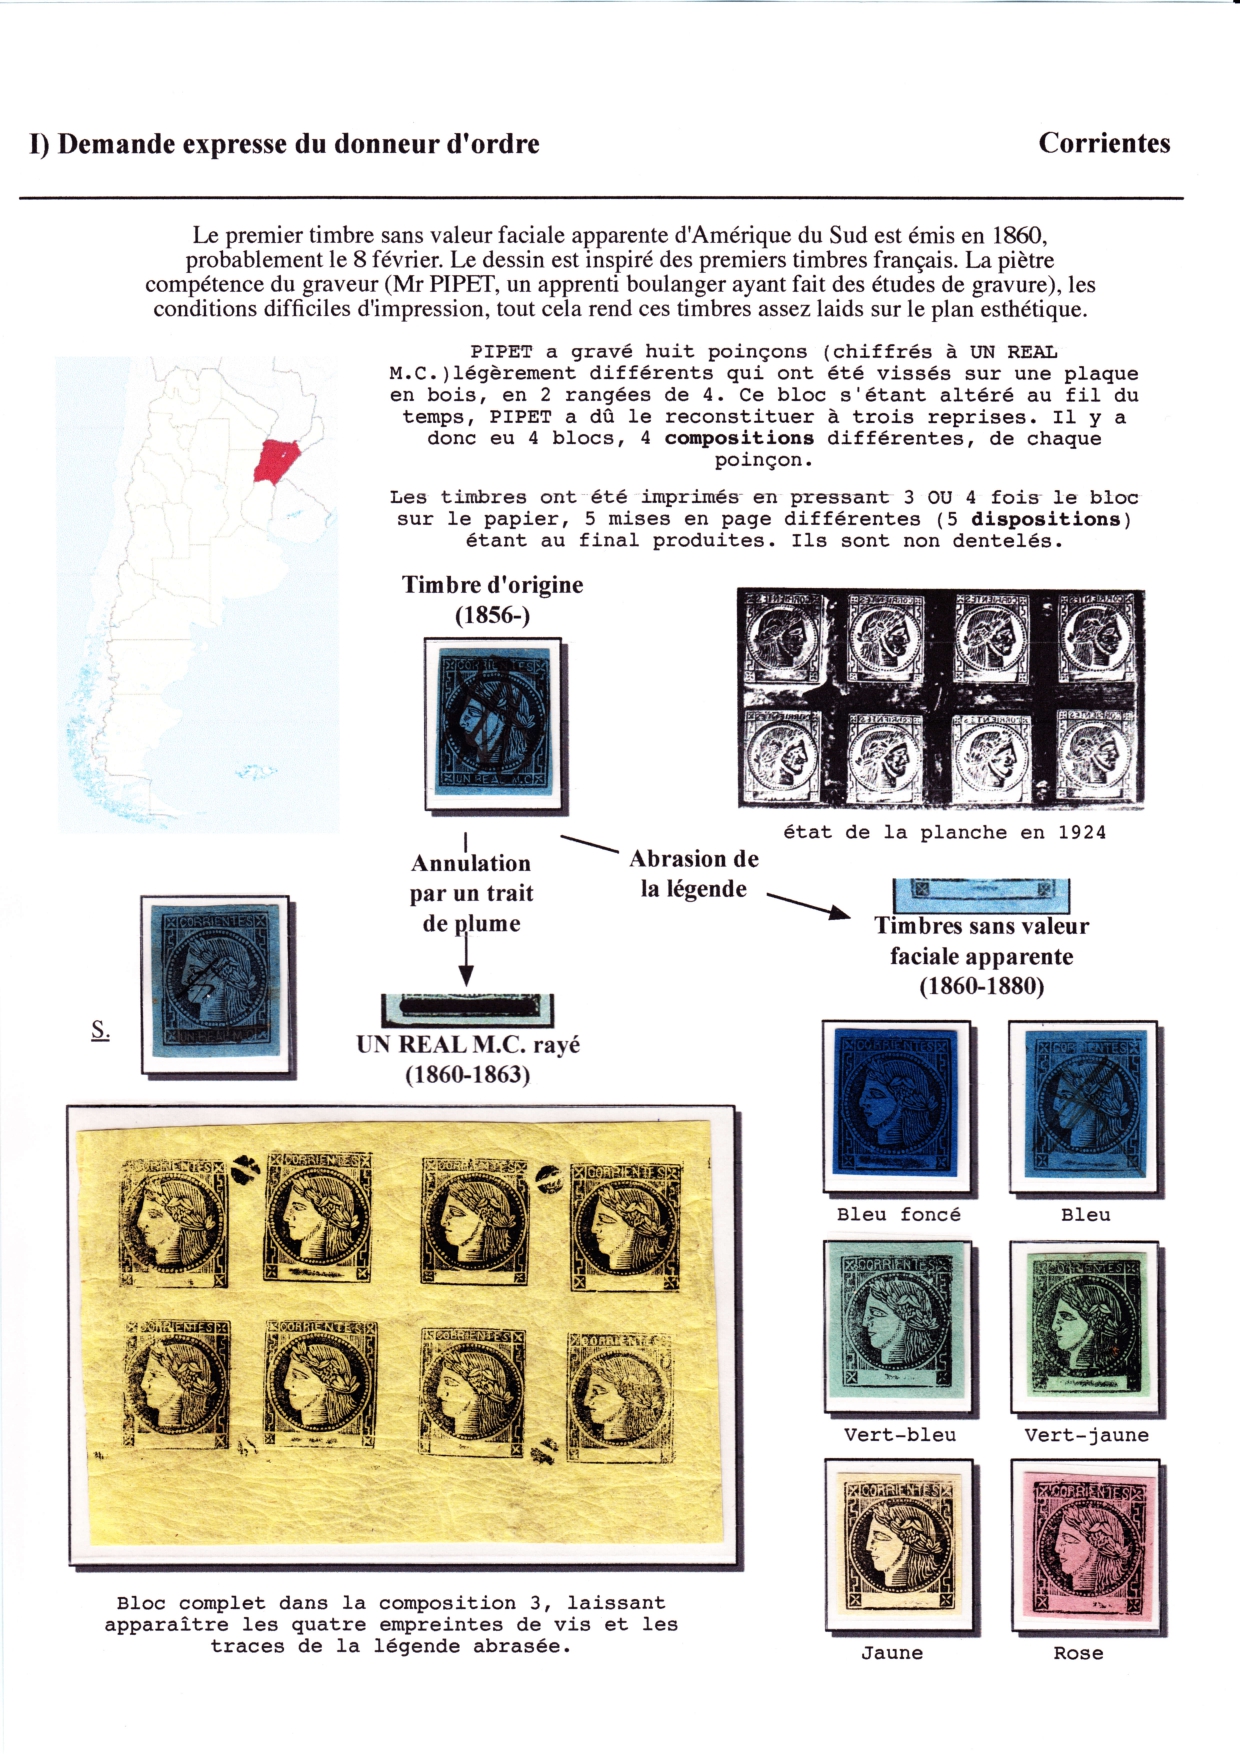 Les d��buts des timbres sans valeur faciale apparente p. 15